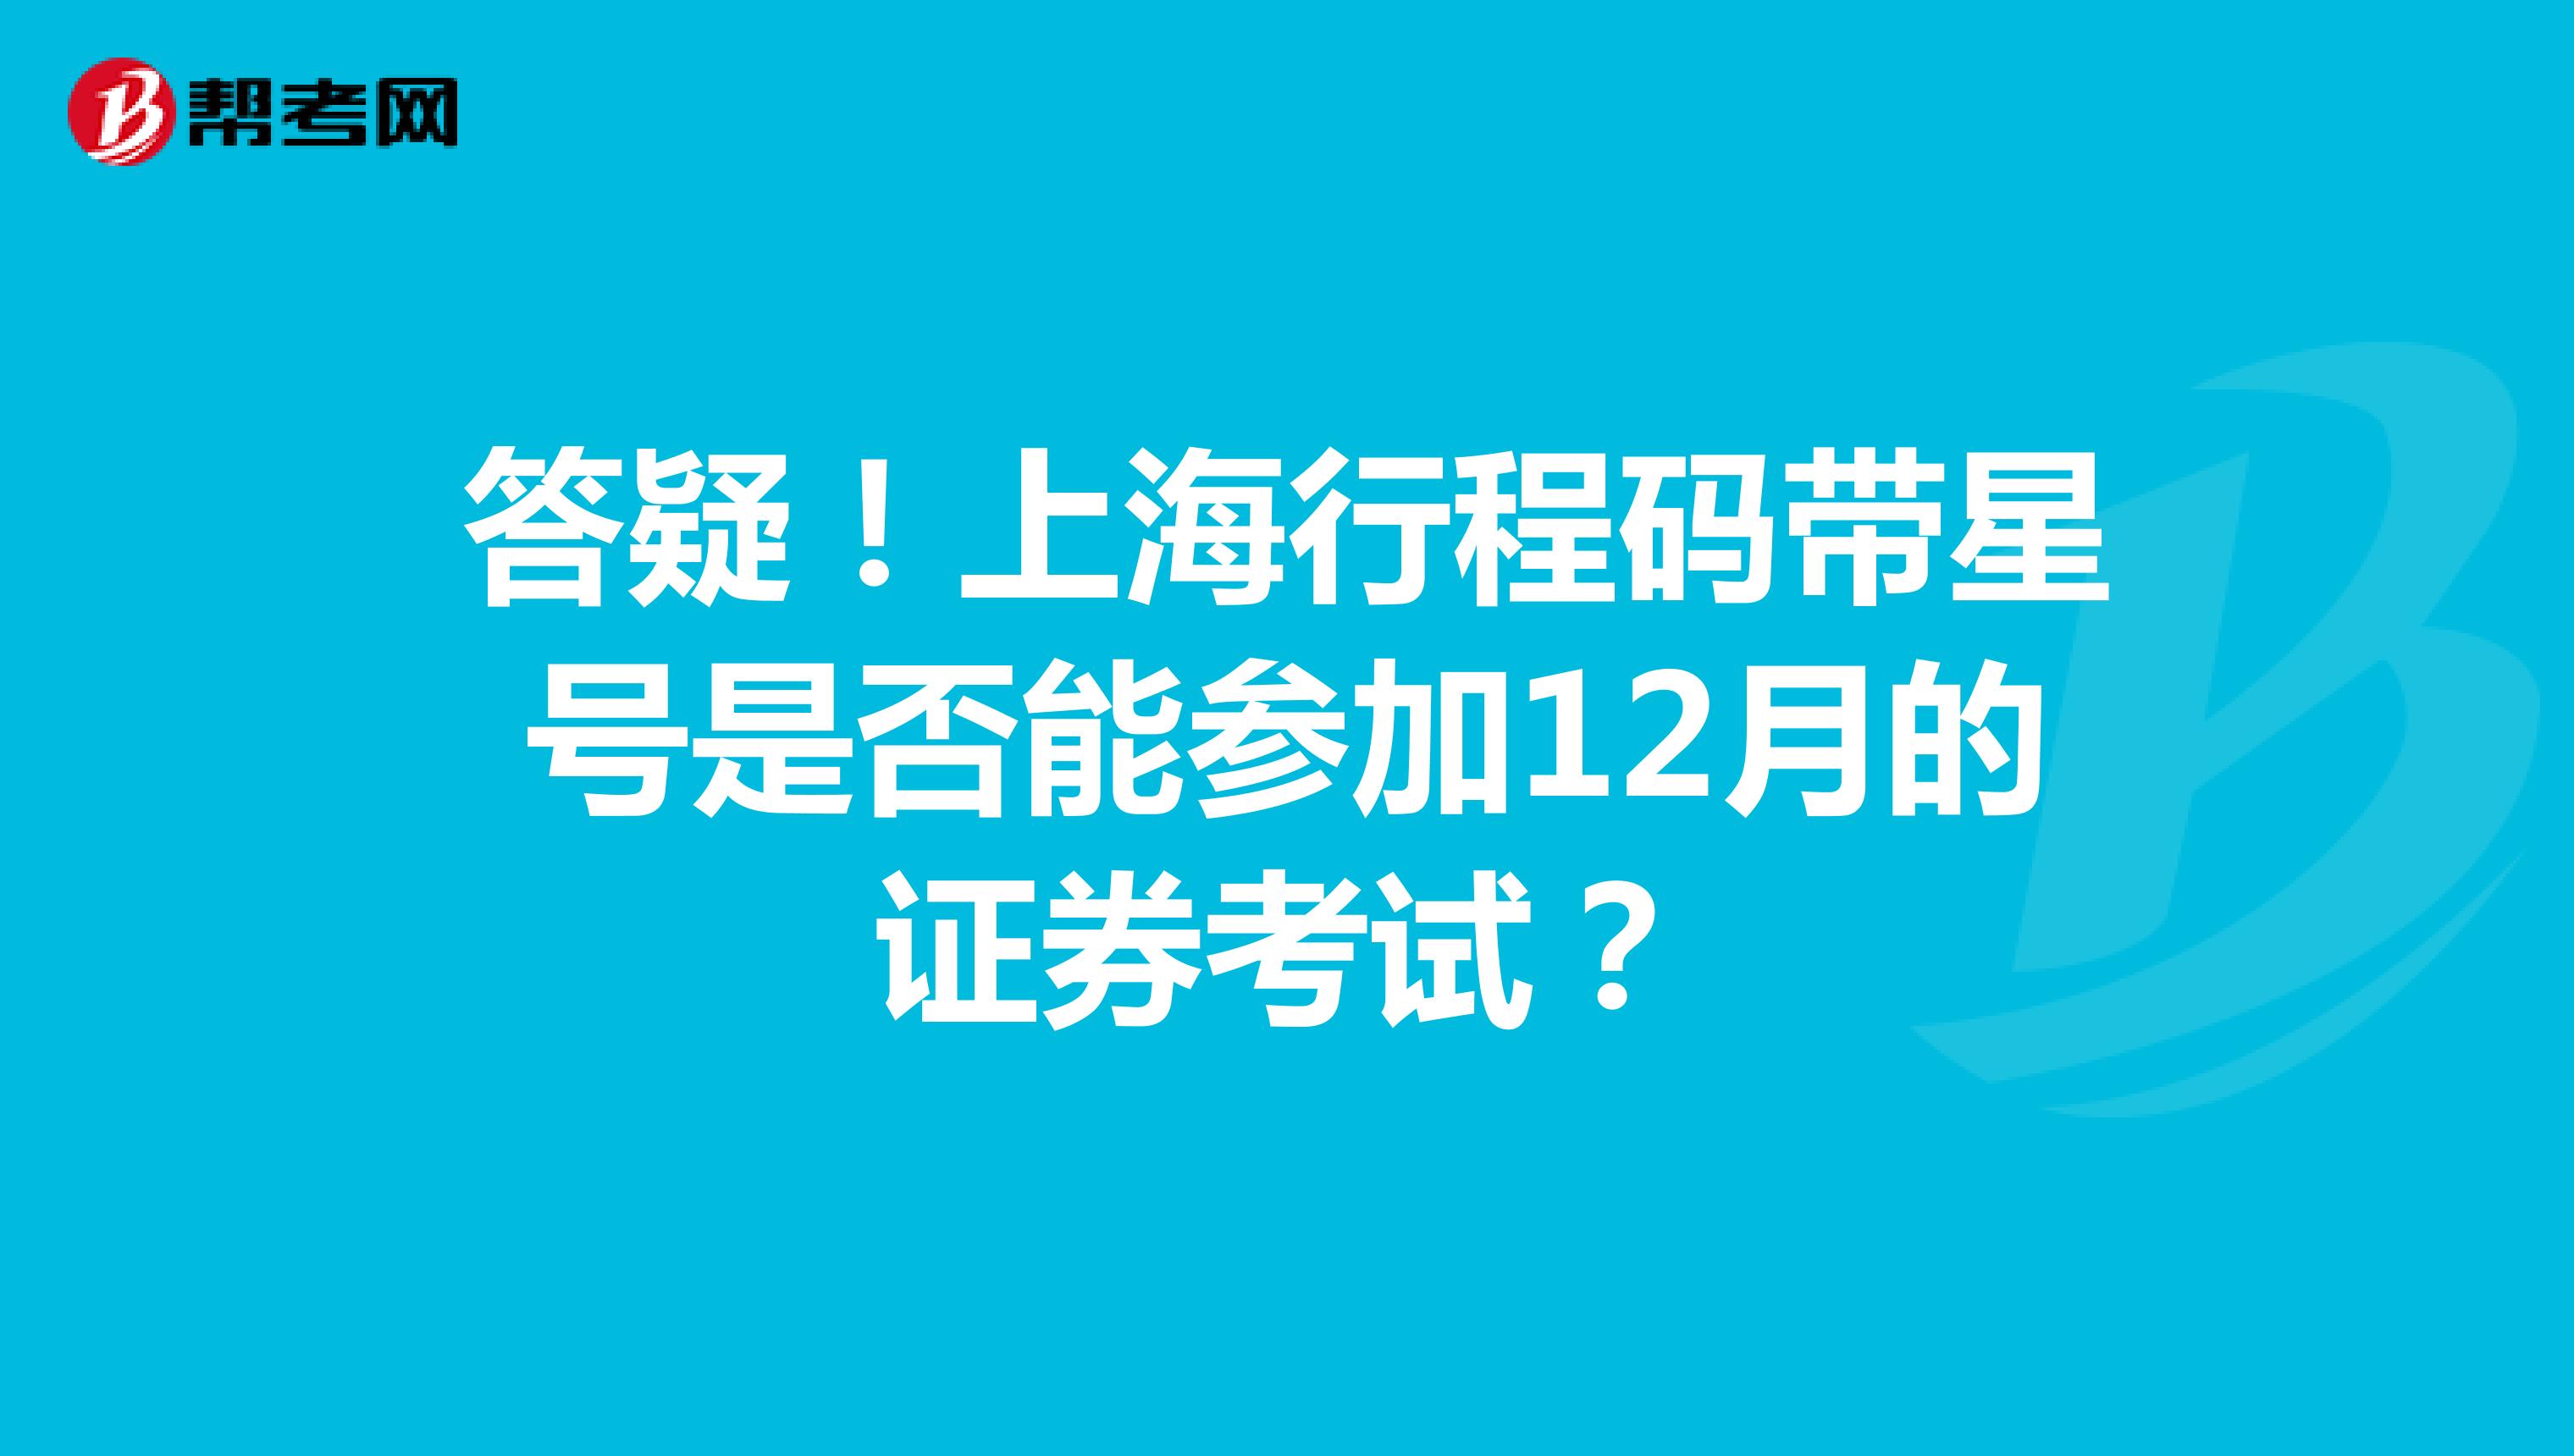 答疑！上海行程码带星号是否能参加12月的证券考试？